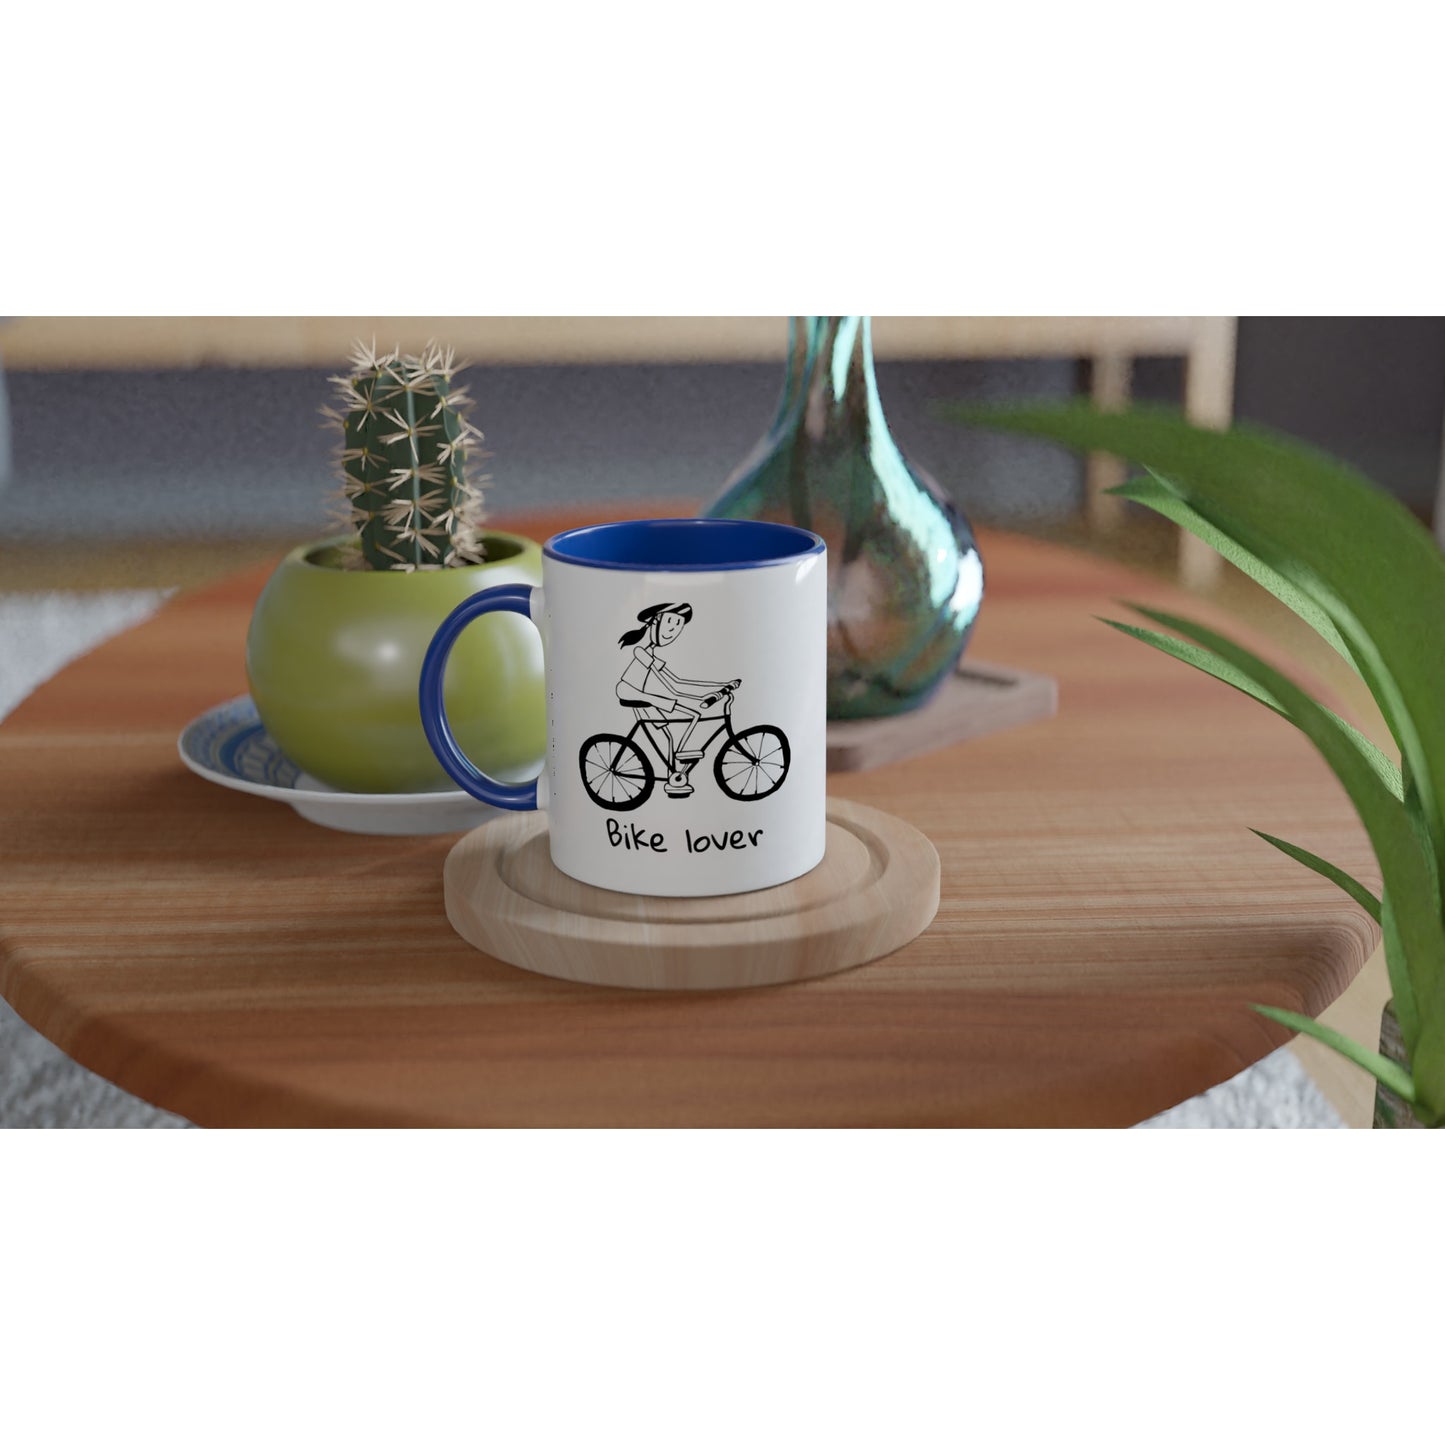 Bike lover ceramic mug - womans